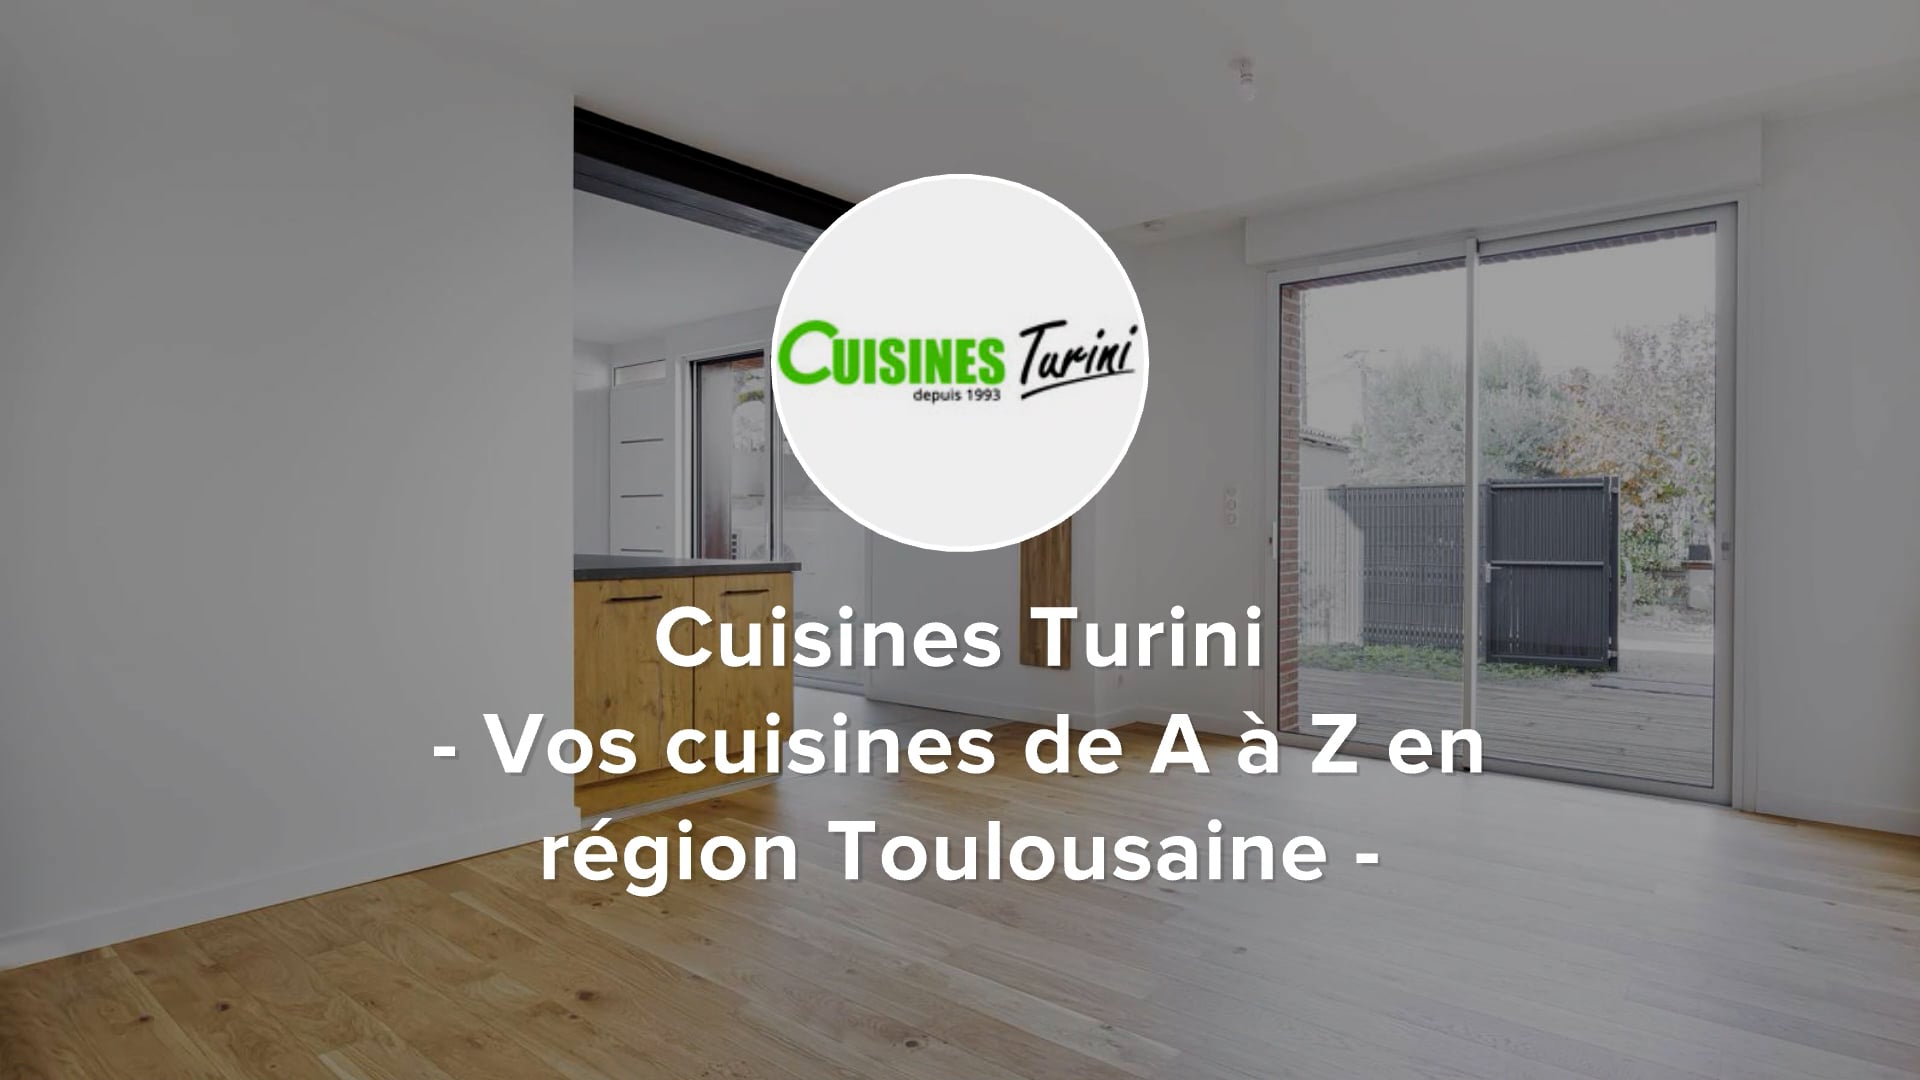 Prix pour achat et pose de cuisine moderne équipée pas cher à Portet sur  Garonne 31 - Cuisines Turini